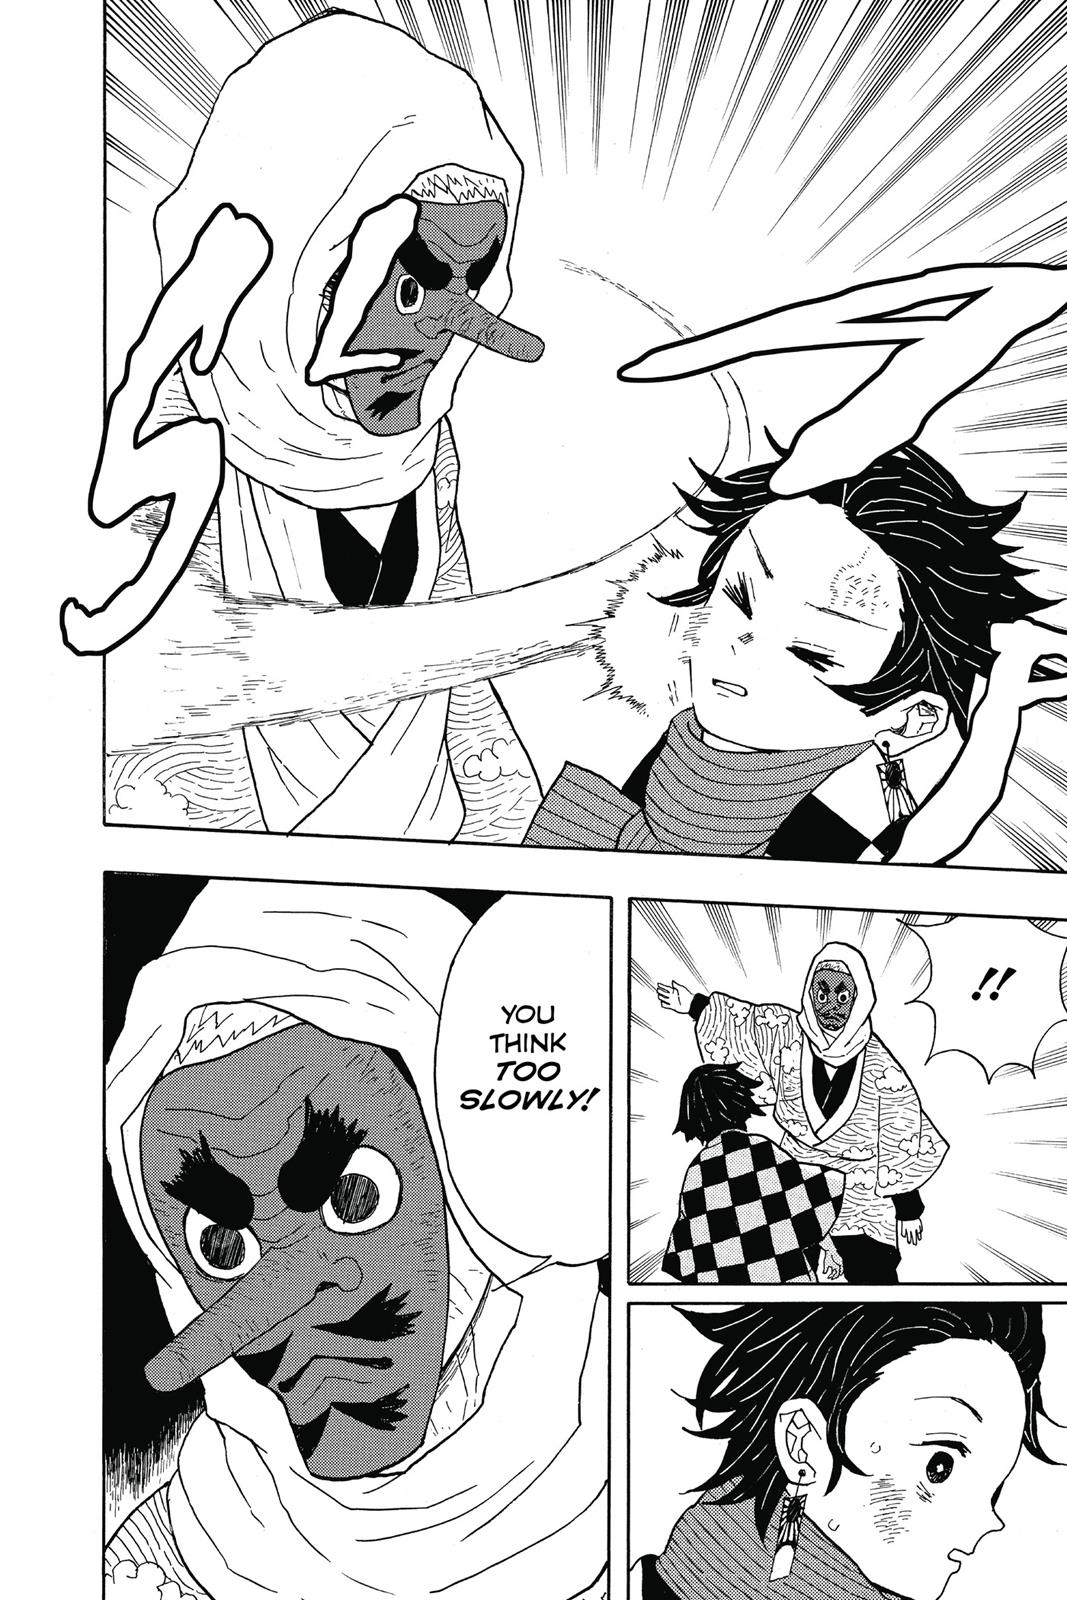 Demon Slayer Manga Manga Chapter - 3 - image 10